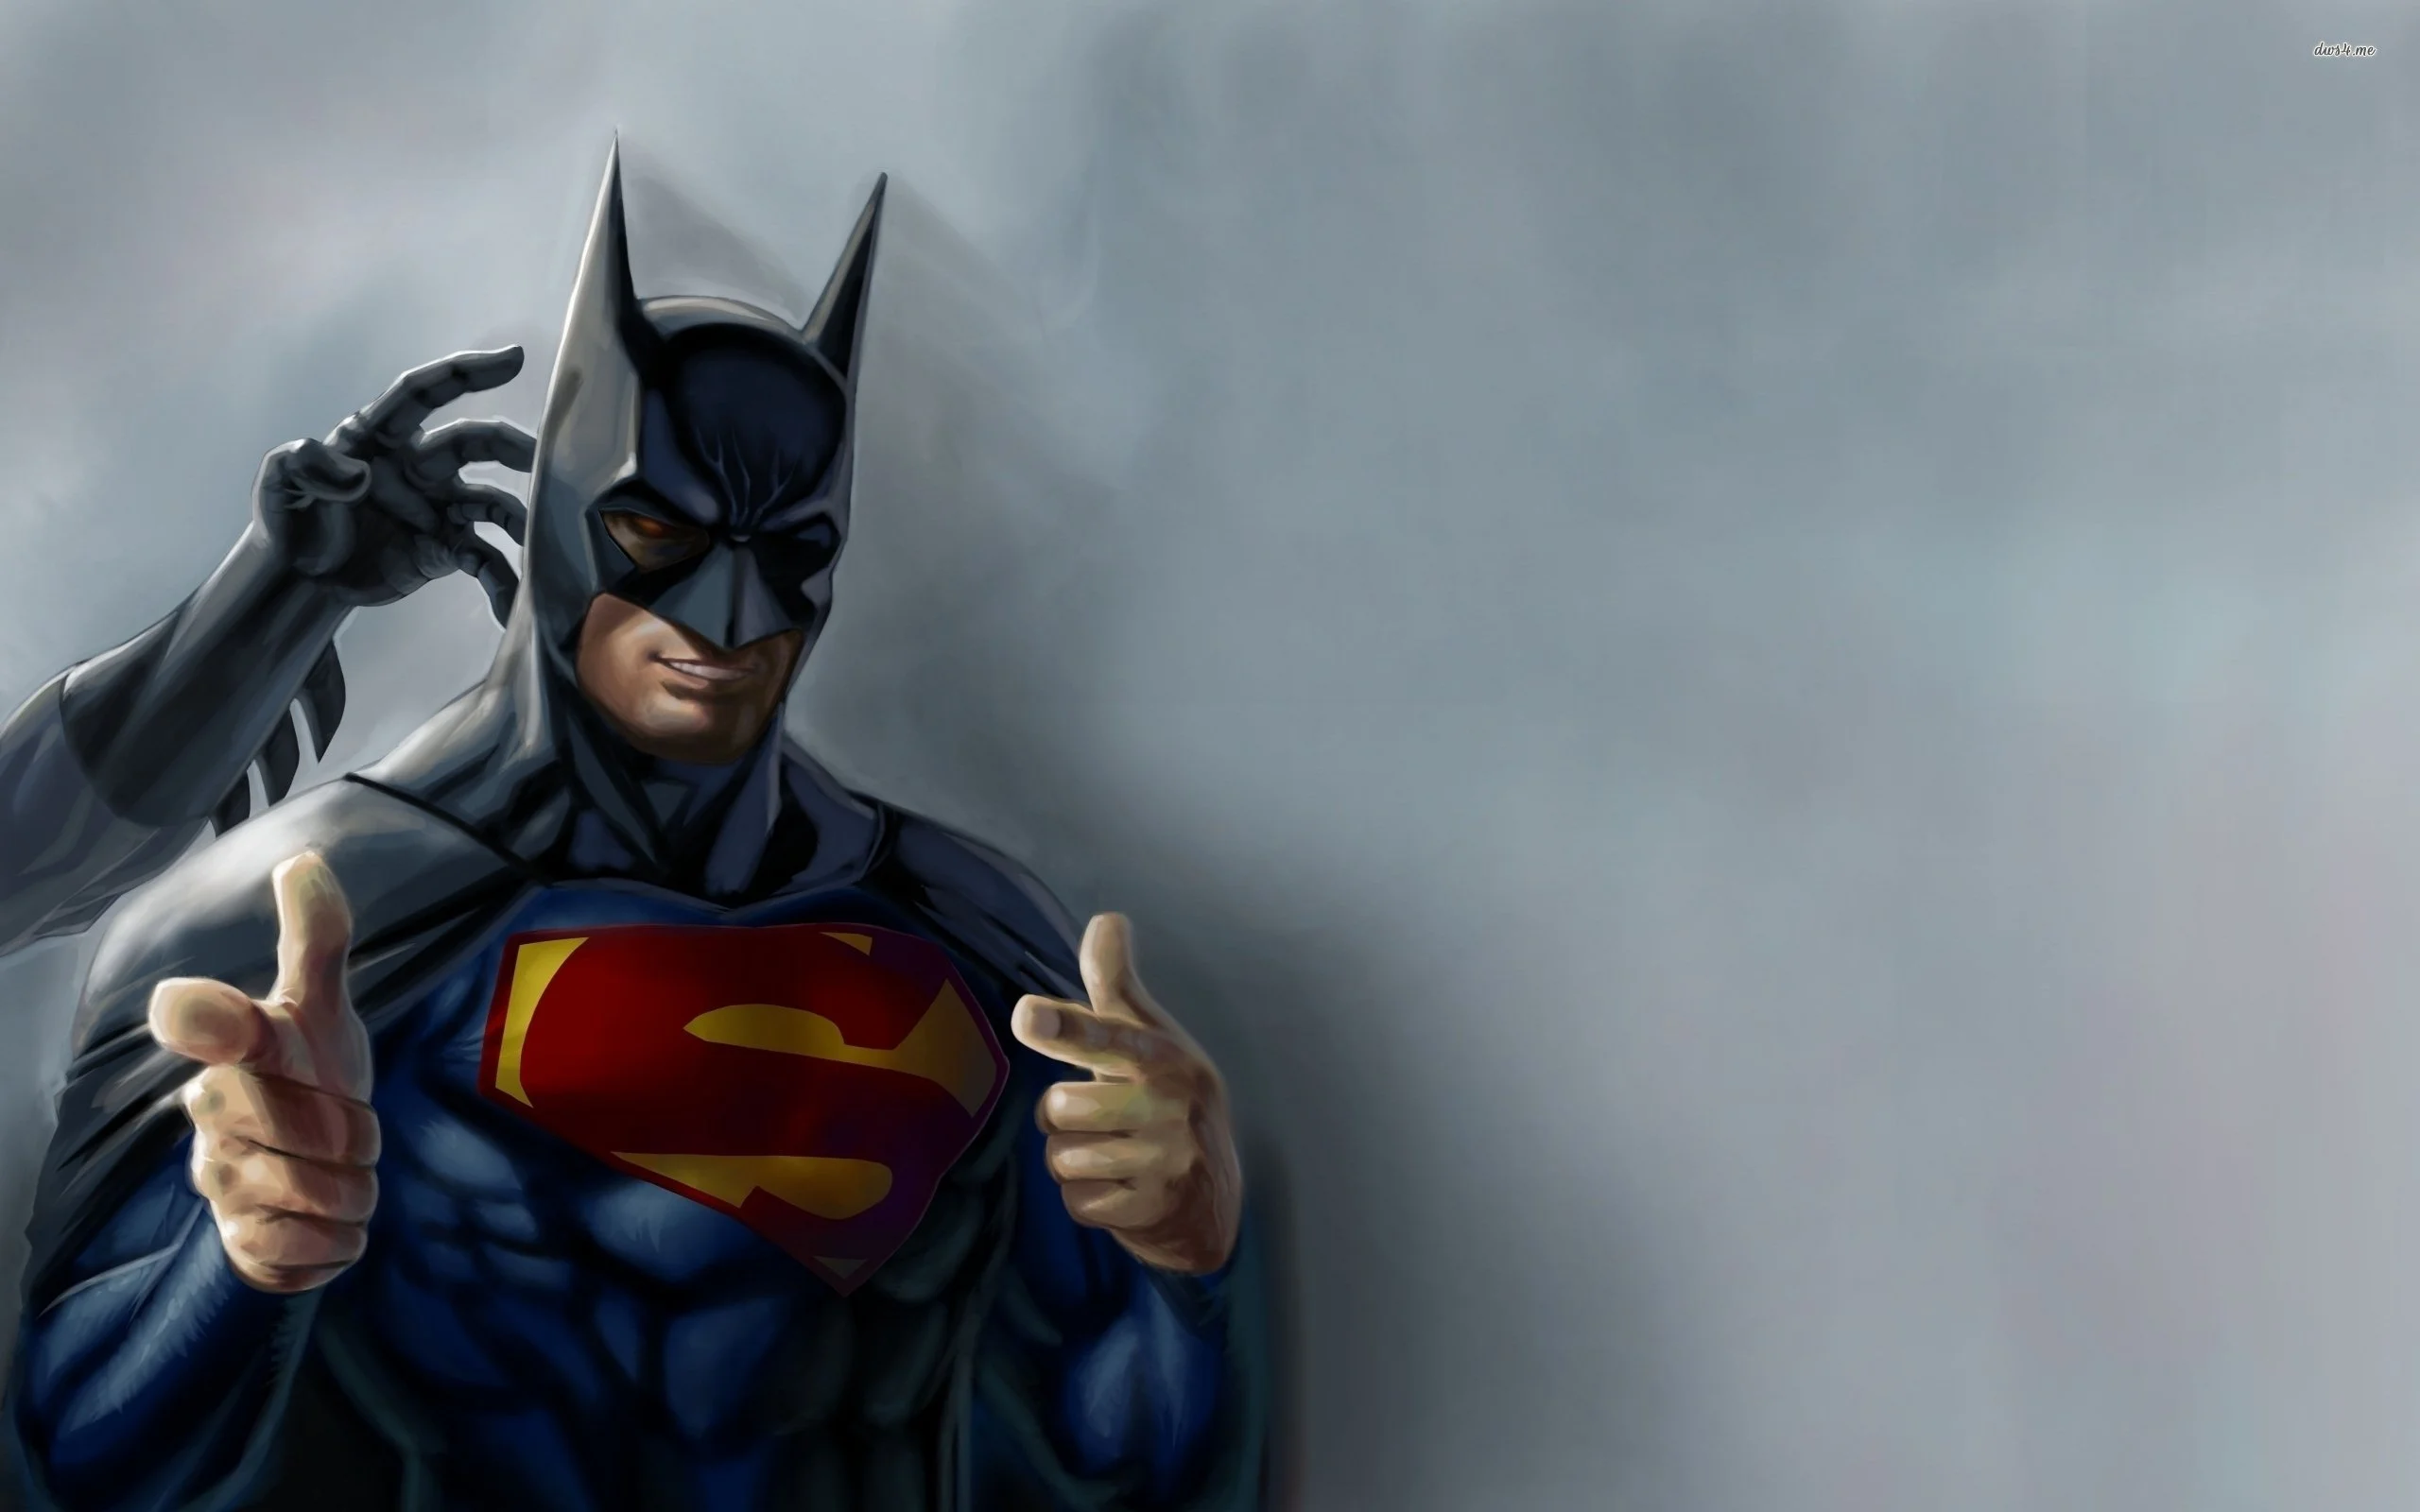 Сегодня в сети появился скриншот якобы находящейся в разработке игры про супермена за авторством WB games Montreal. К нему даже прилагалась гифка, показывающая, что Супермен в этом меню анимирован. Новостные издания в приступе притворного энтузиазма отписали дежурное «Слух: игра про супермена от создателей Arkham origins». 